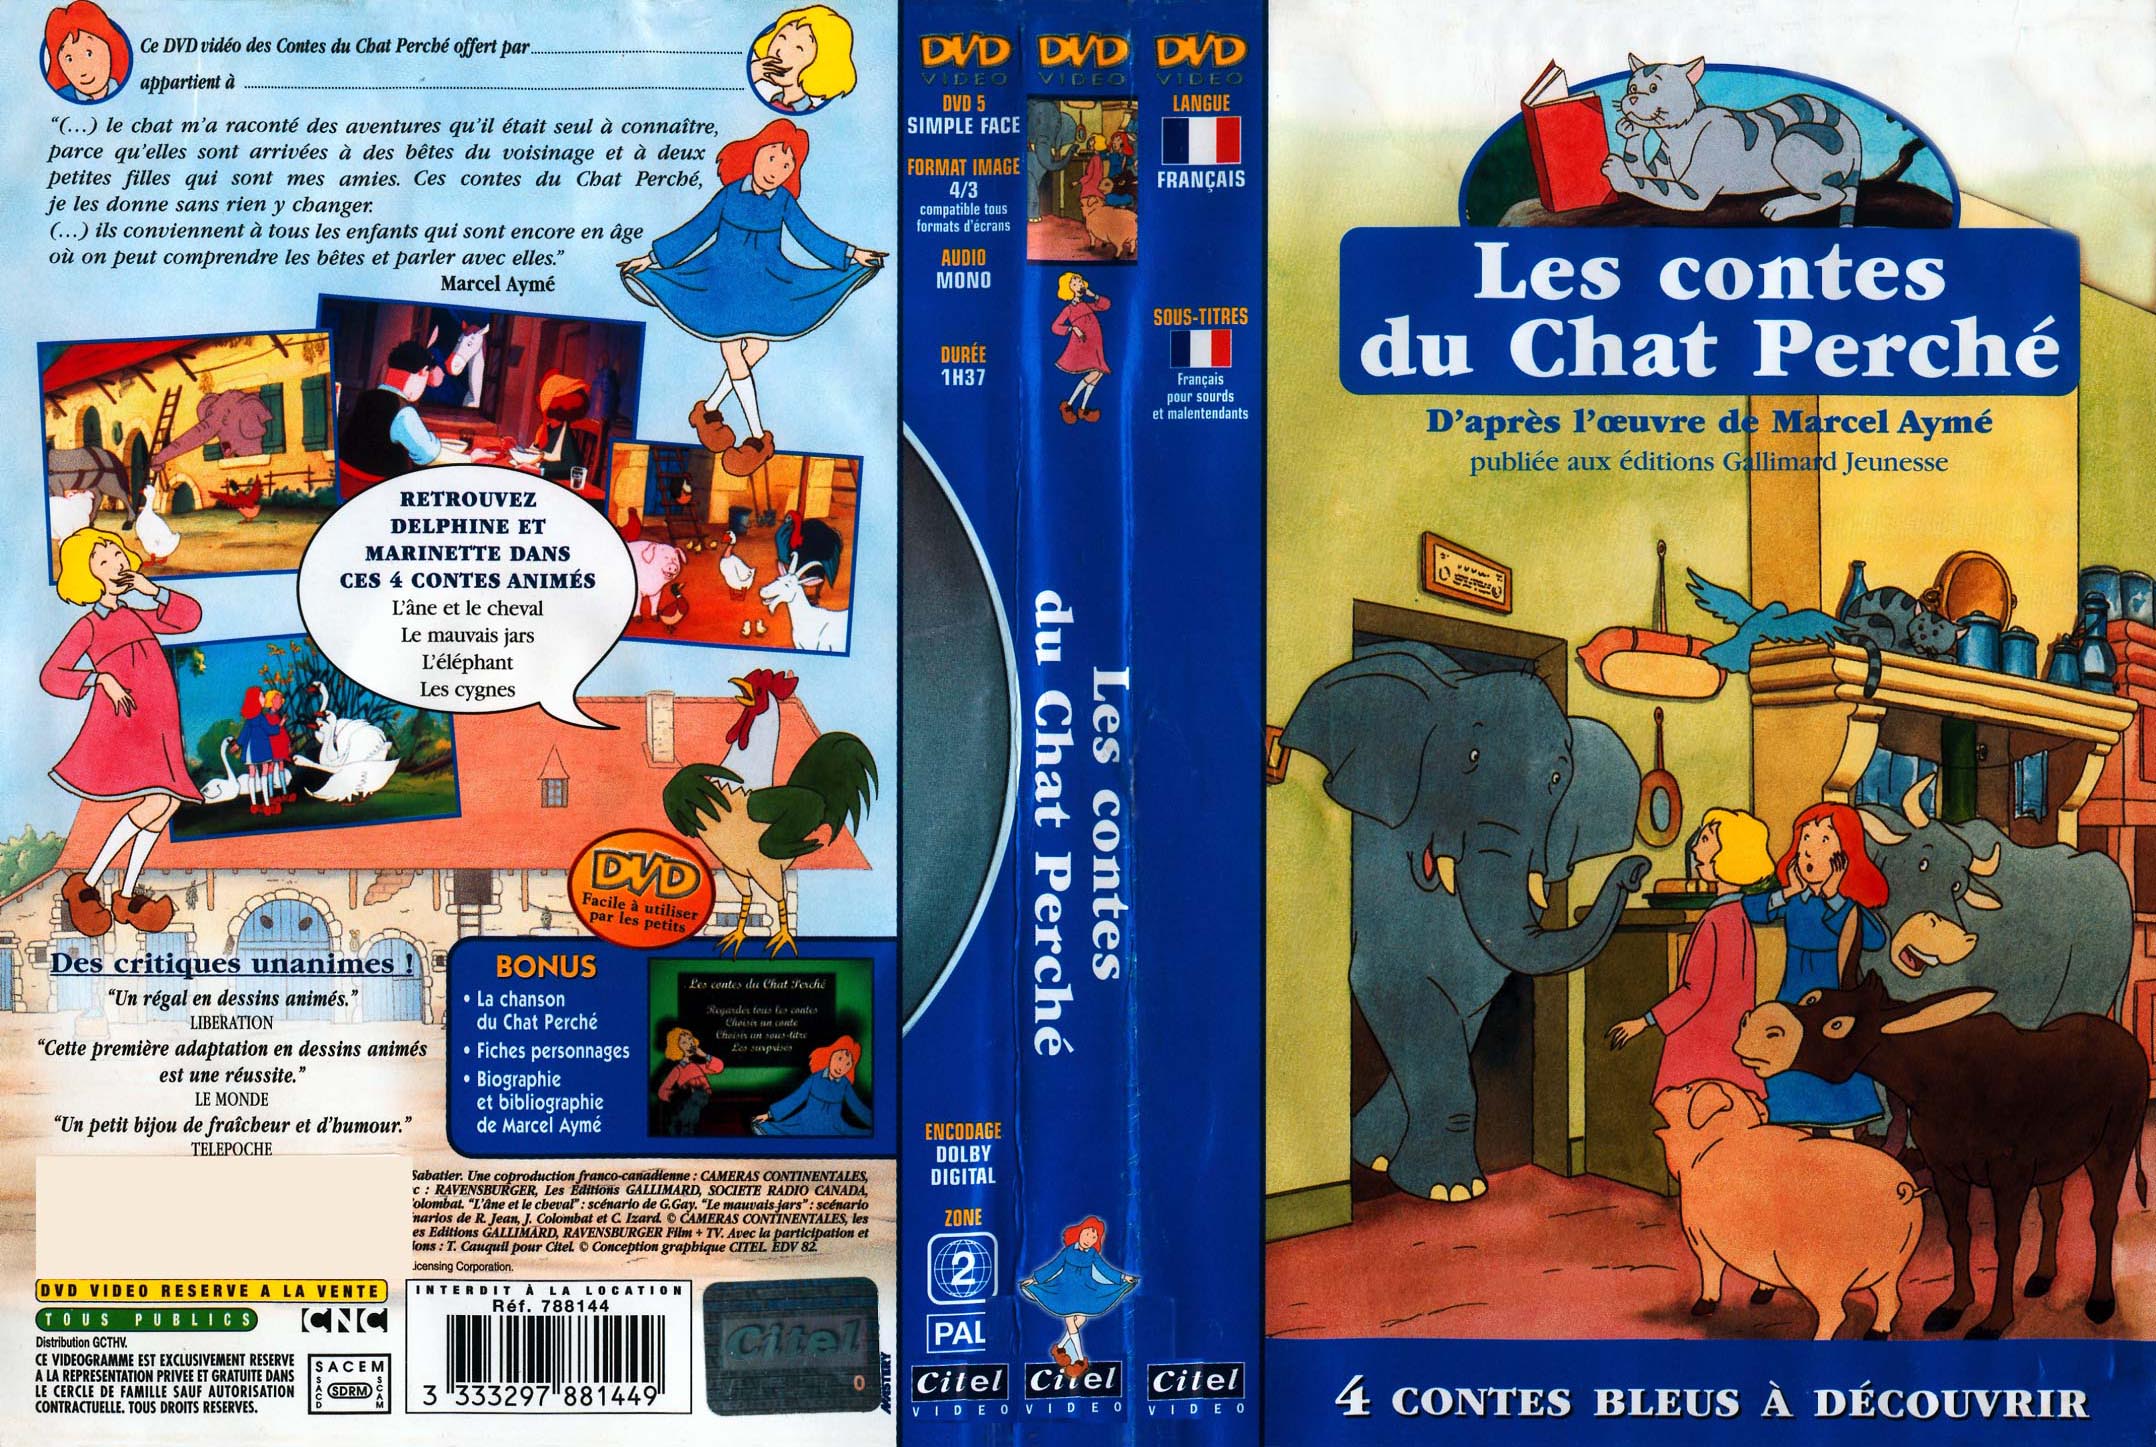 Jaquette DVD Les contes du chat perche (bleu)